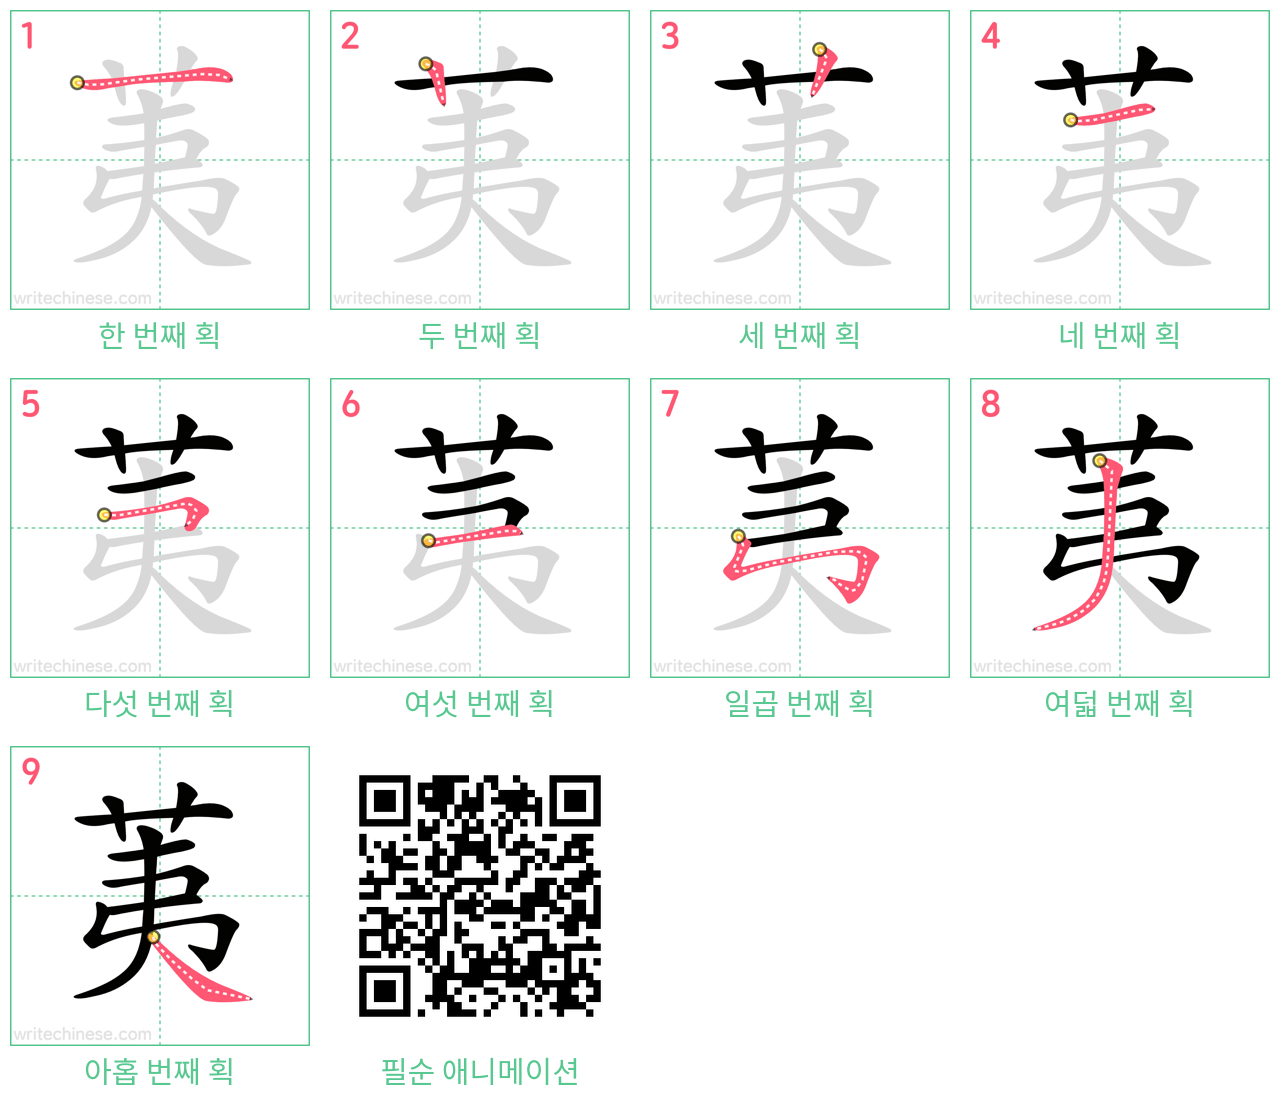 荑 step-by-step stroke order diagrams